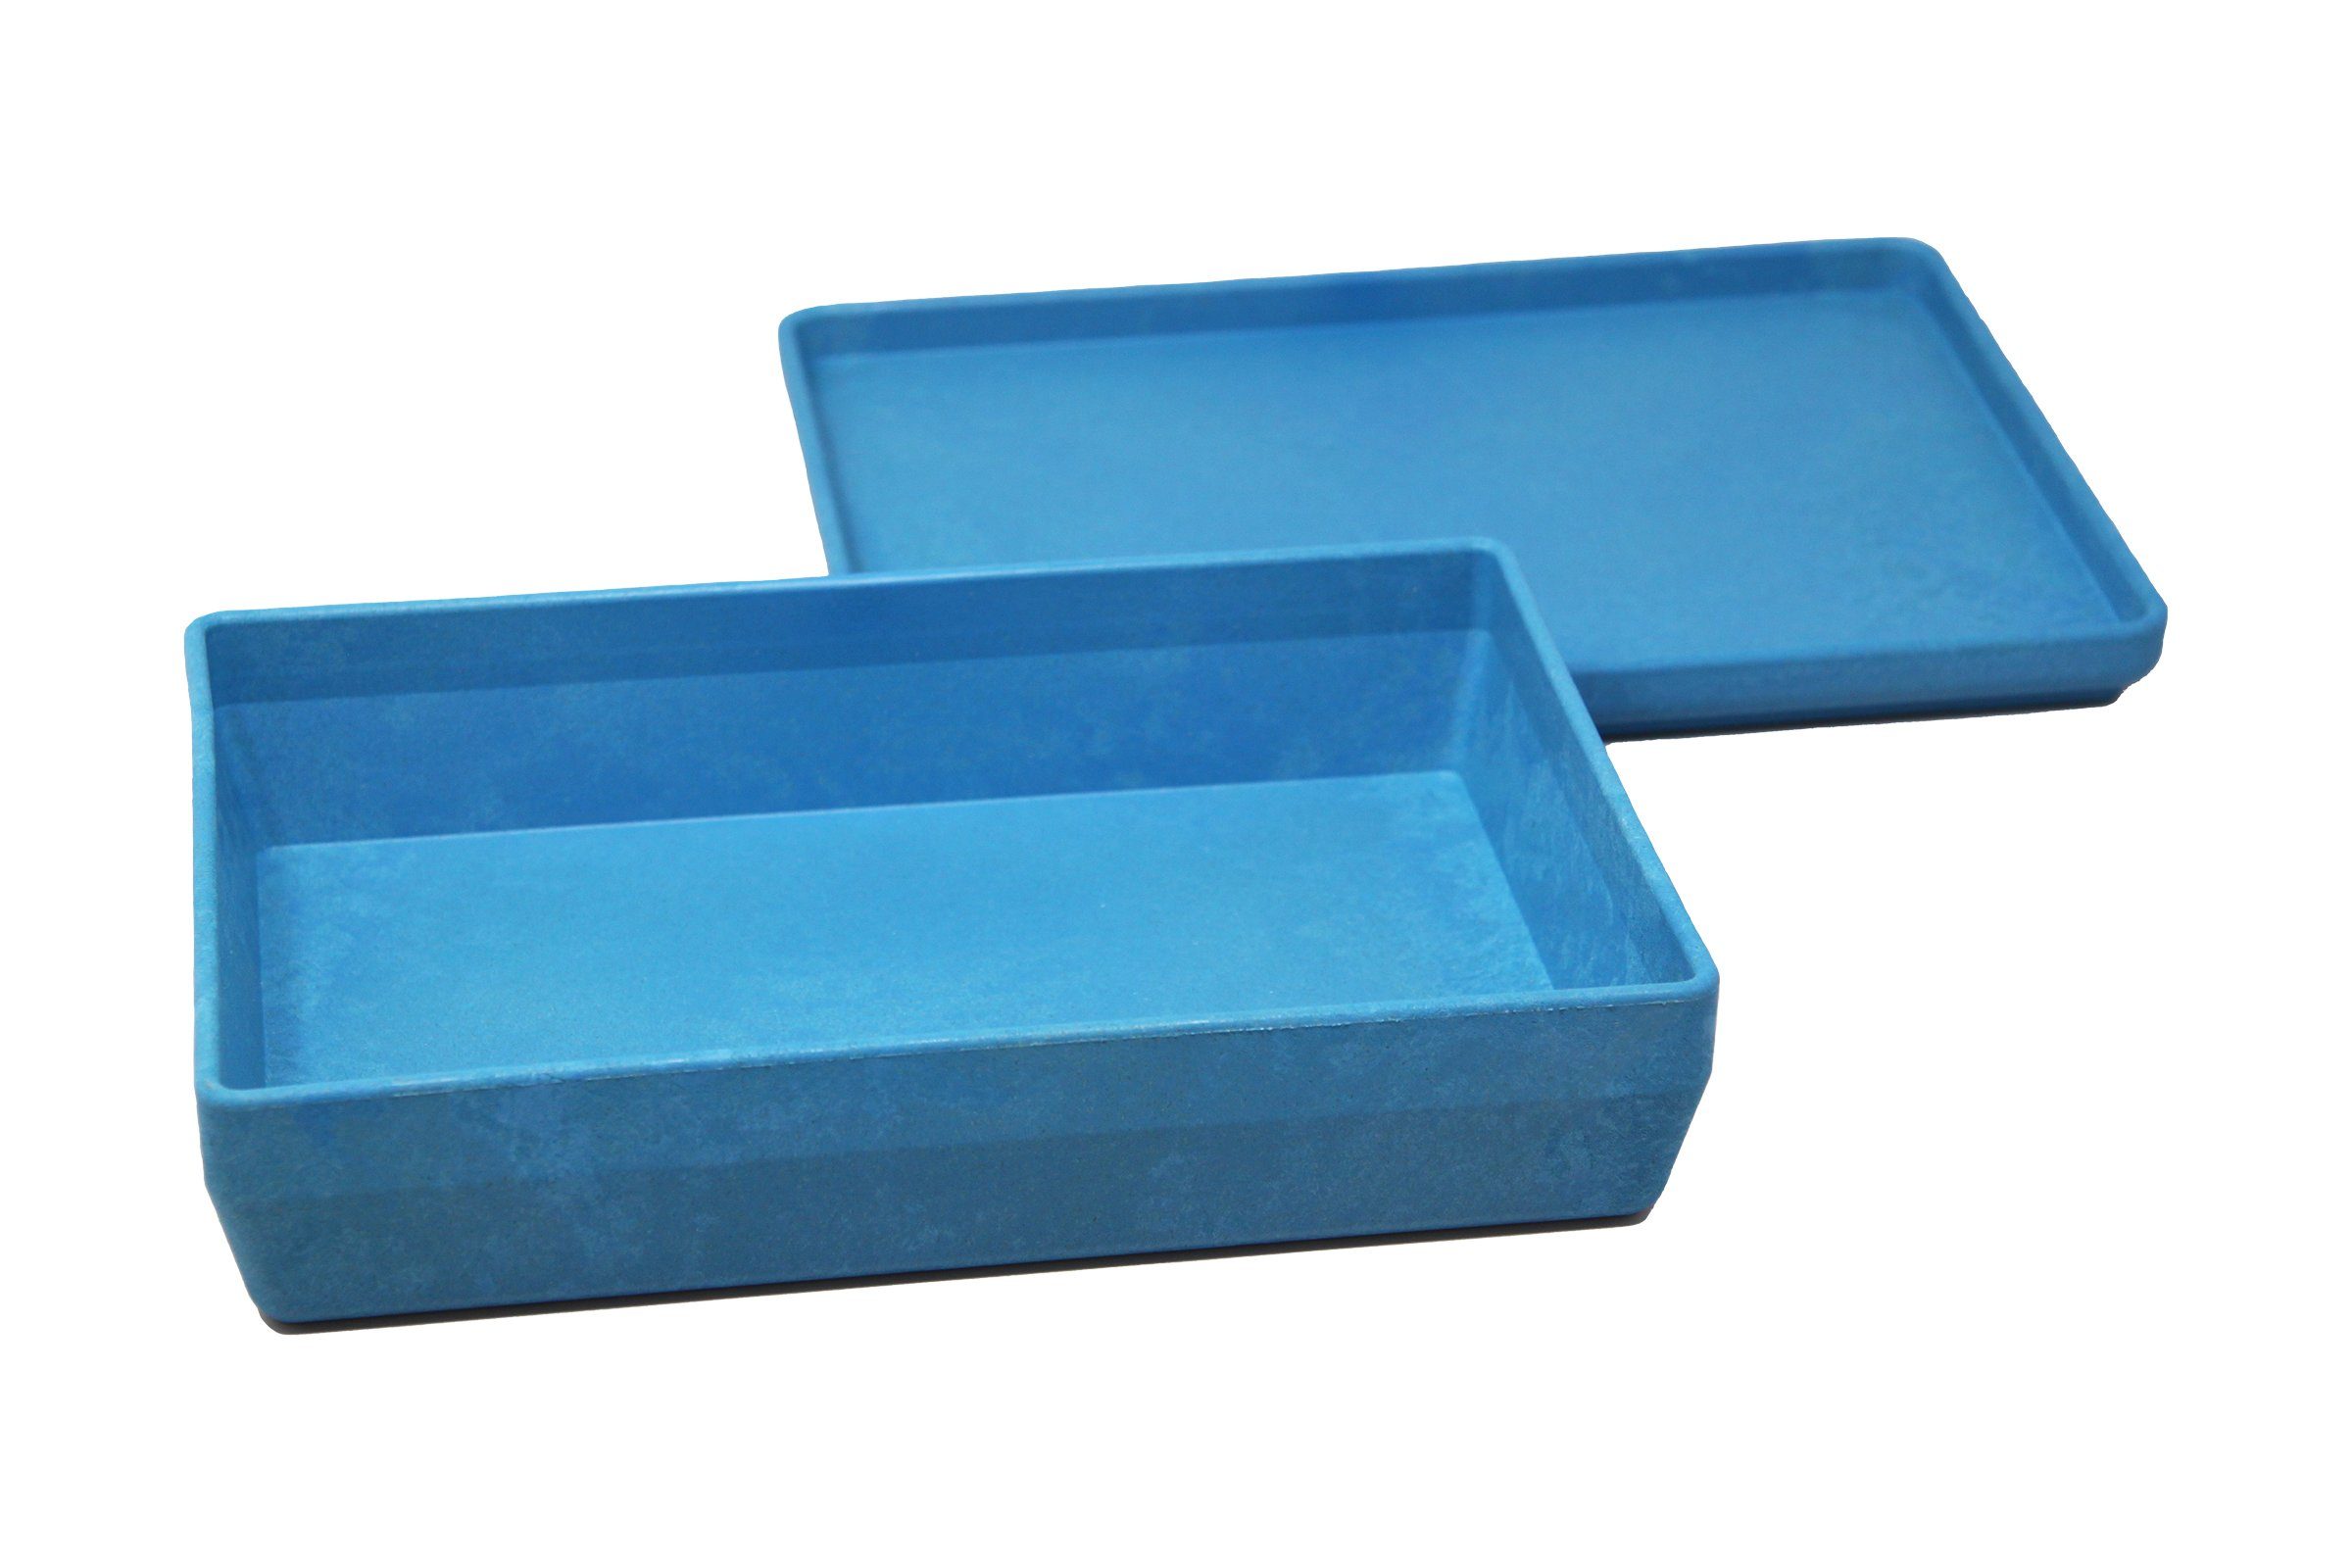 RE-Wood® aktiv Deckel Lernspielzeug Wissner® Box stapelbar Aufbewahren in lernen blau versch. mit Farben,